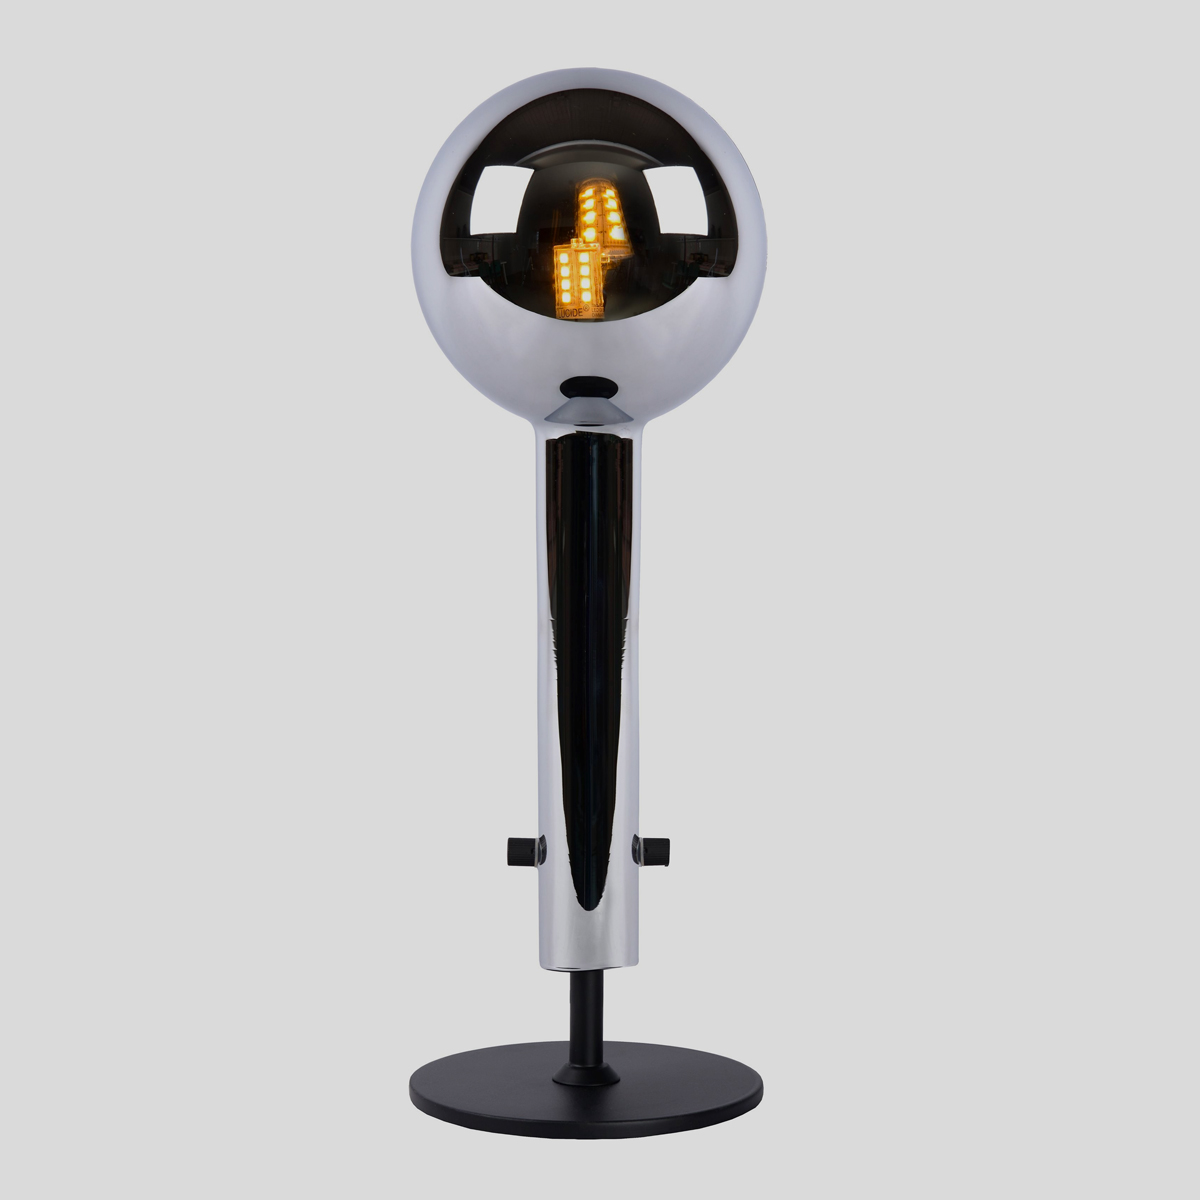 Deze tafellamp heeft een design dat opvalt. Helemaal als je de lamp combineert met een G9-fitting en ledlamp in bulb-vorm. 